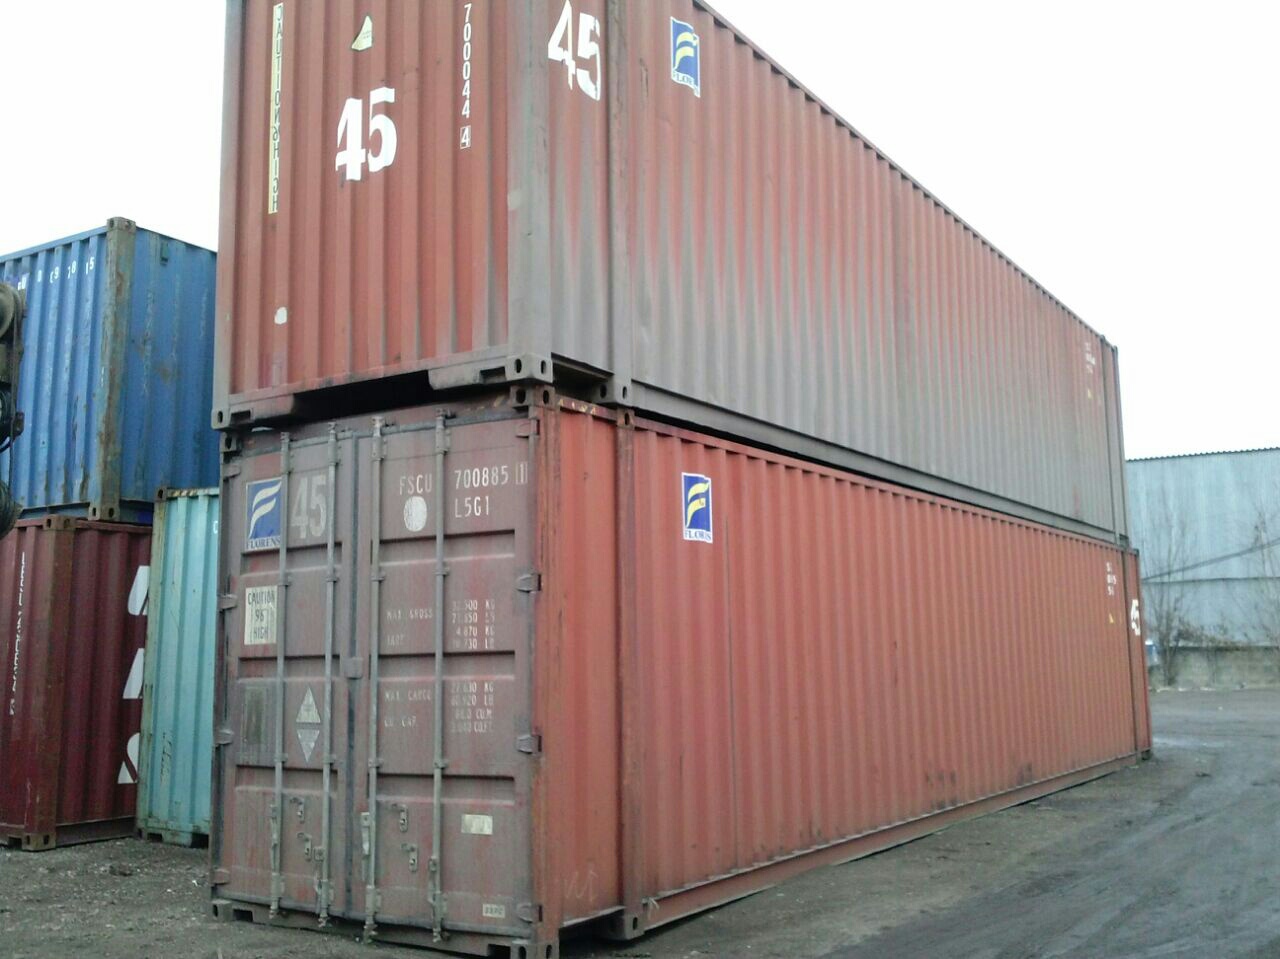 Морские контейнеры б у спб. Морской контейнер 45 футов HCPW. 45-Фут. Контейнер «High-Cube». 45 Футов High Cube Pallet wide. Контейнер 45 футов pw (Pallet wide).